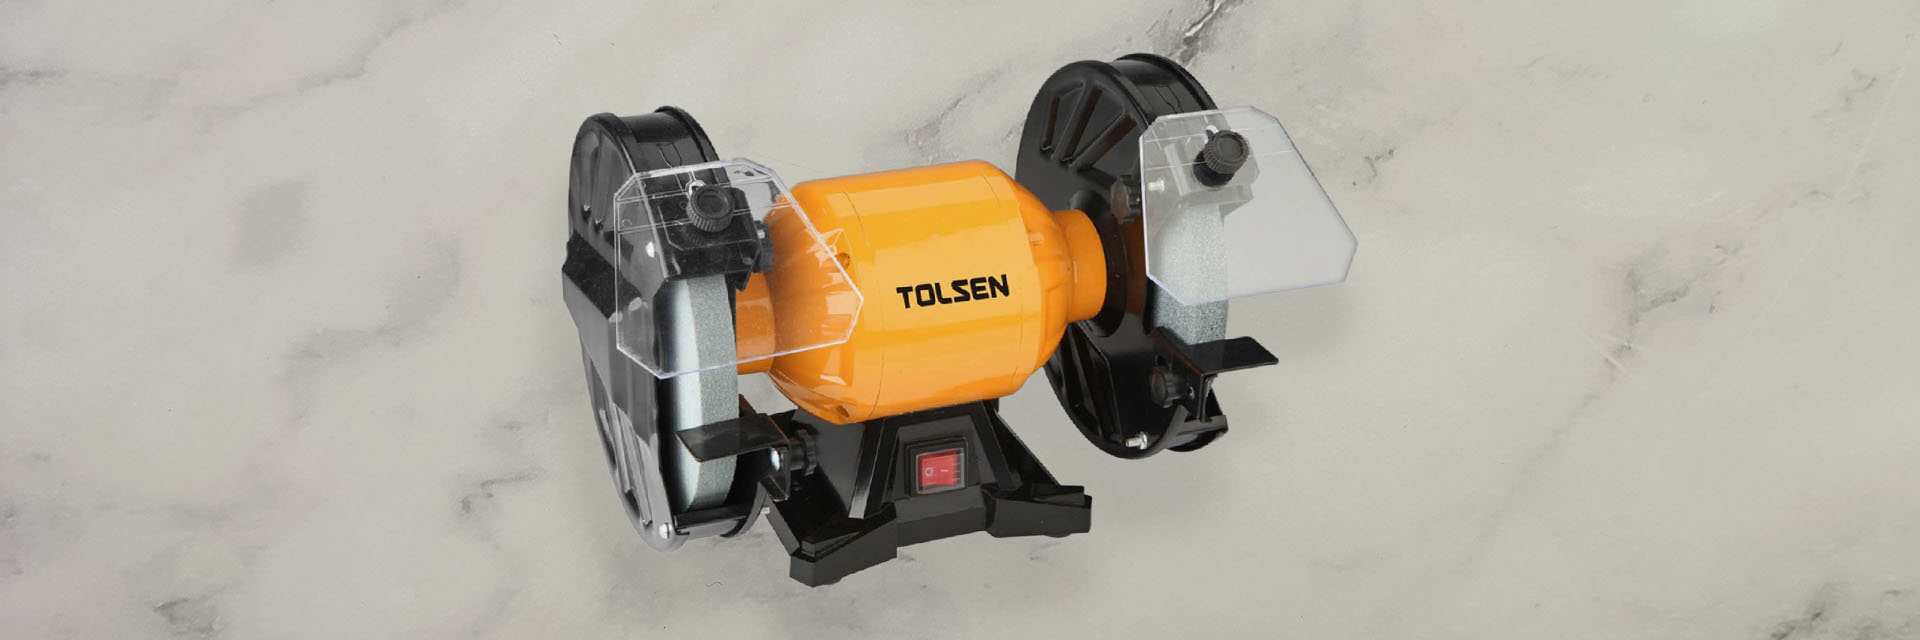 Power tools - Máy mài đá Tolsen